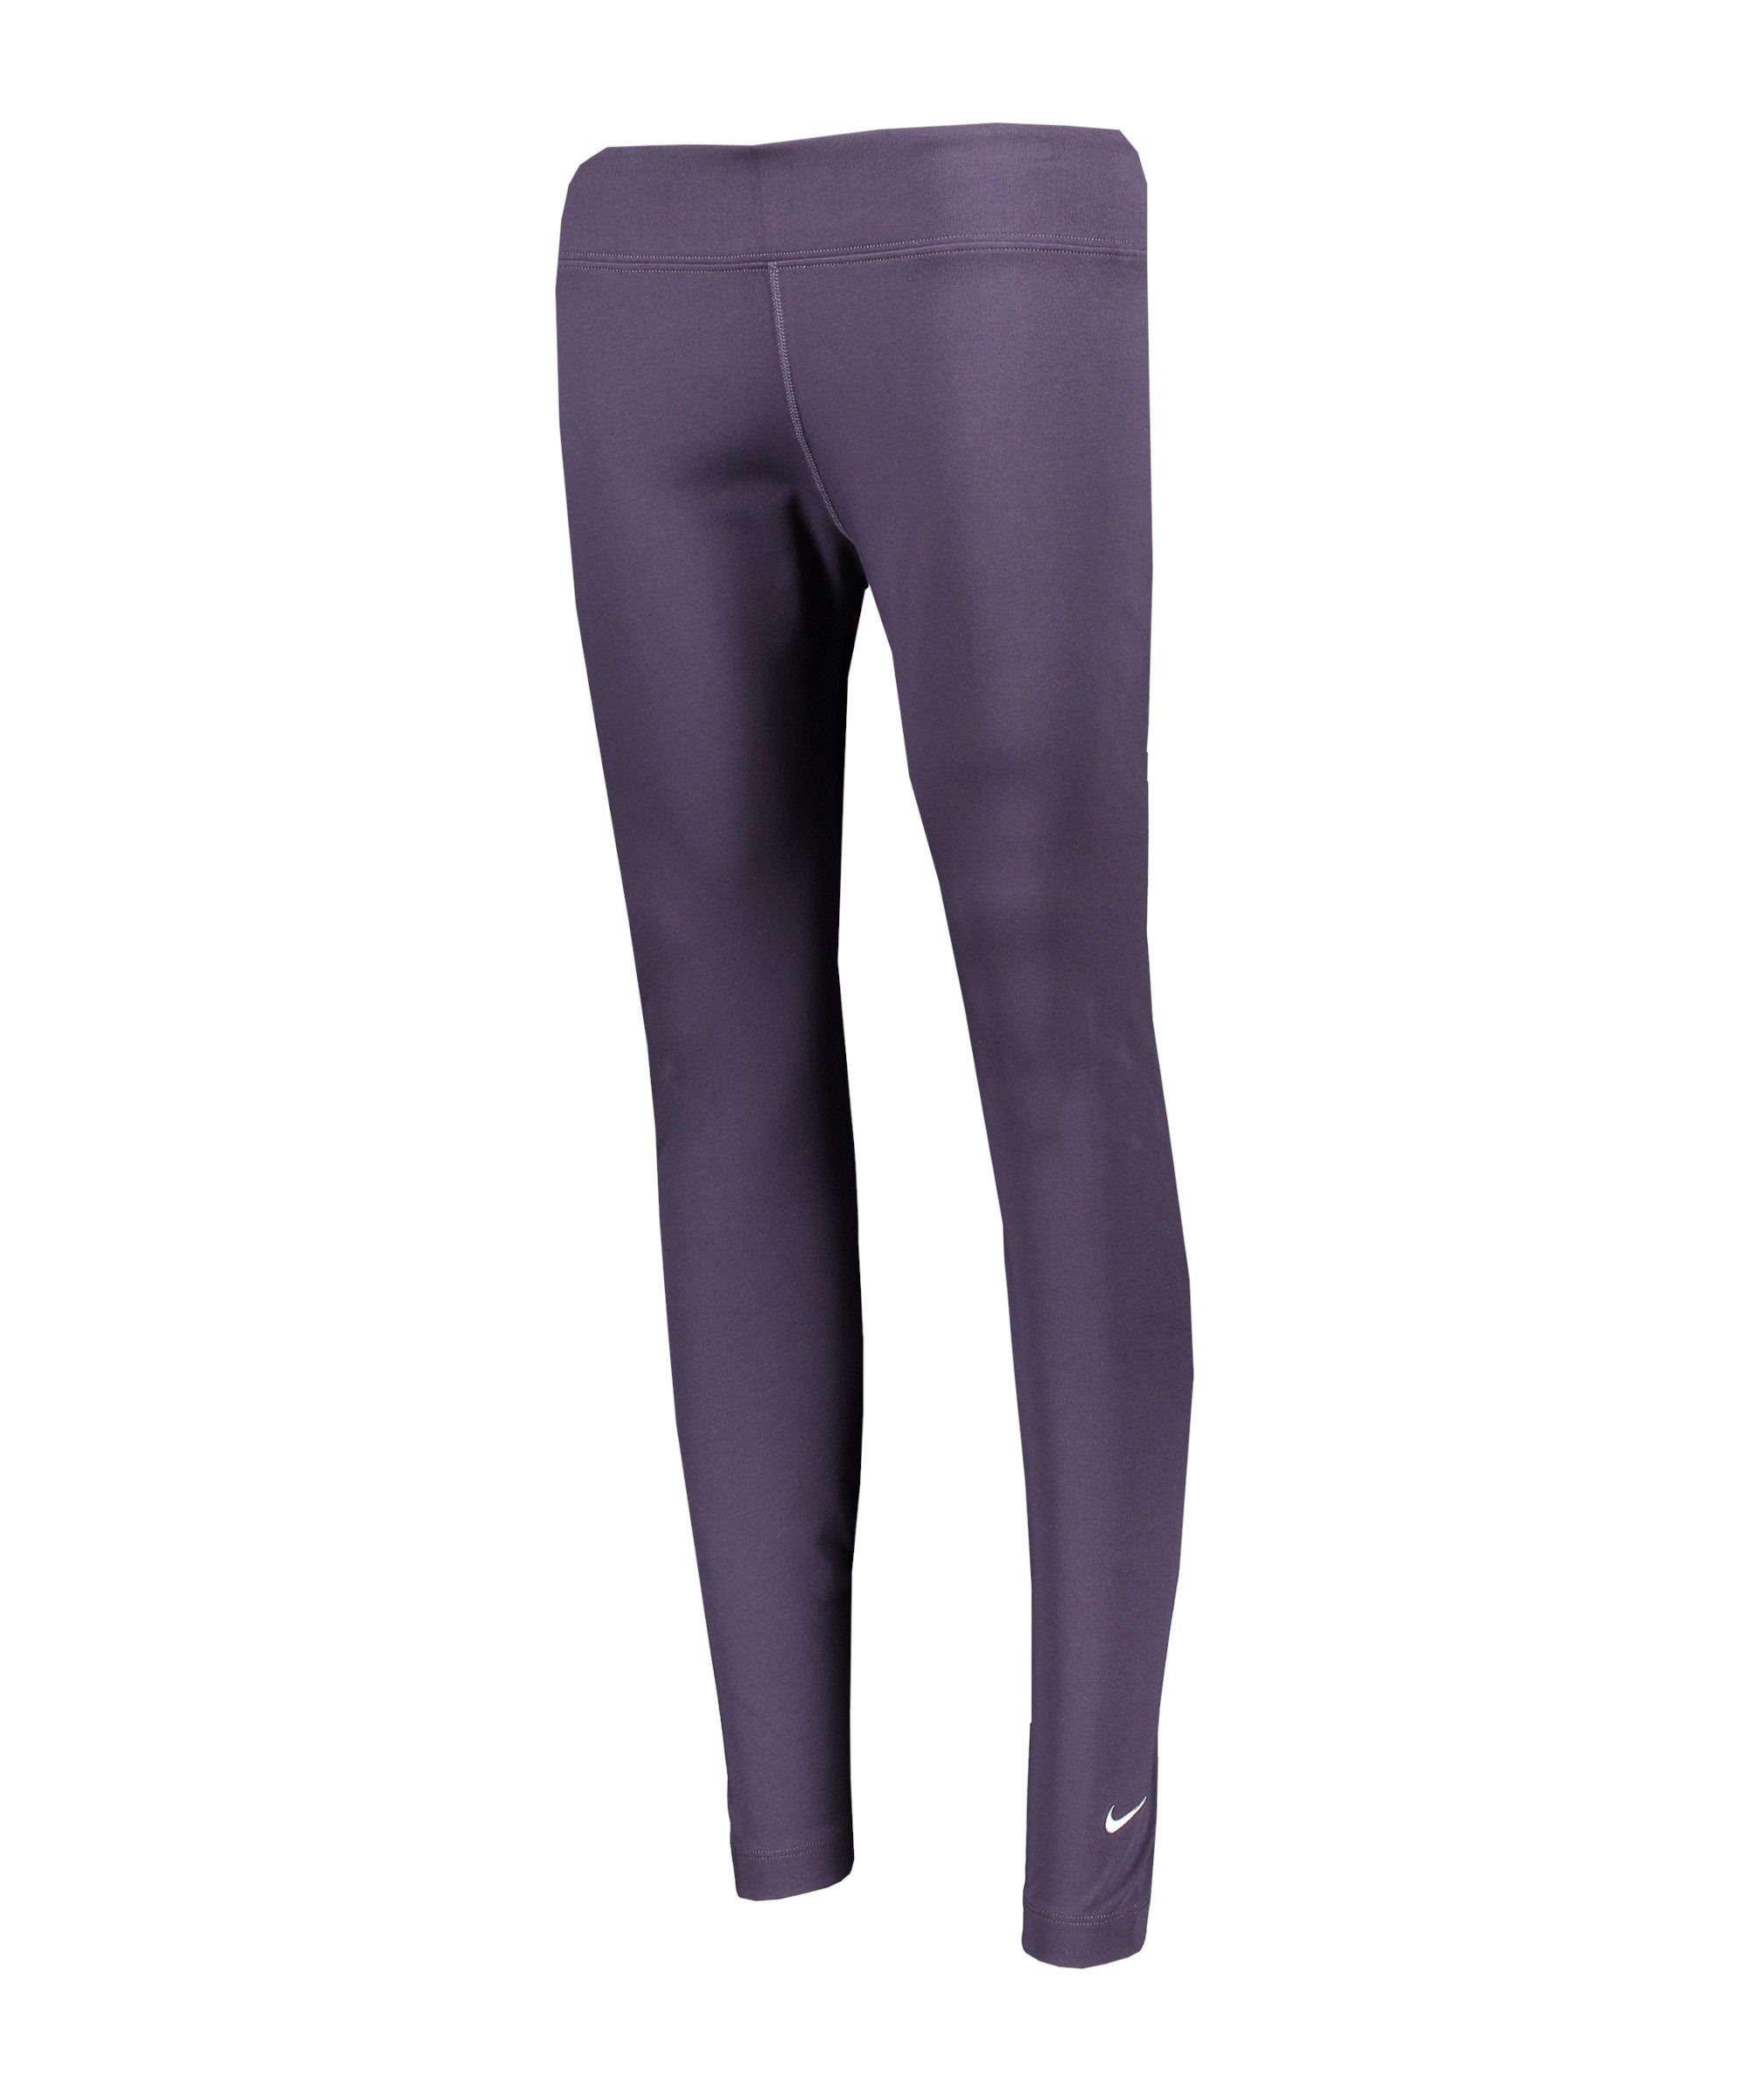 Nike Sportswear Jogger Pants Essentials 7/8 Leggings Damen lilaweiss